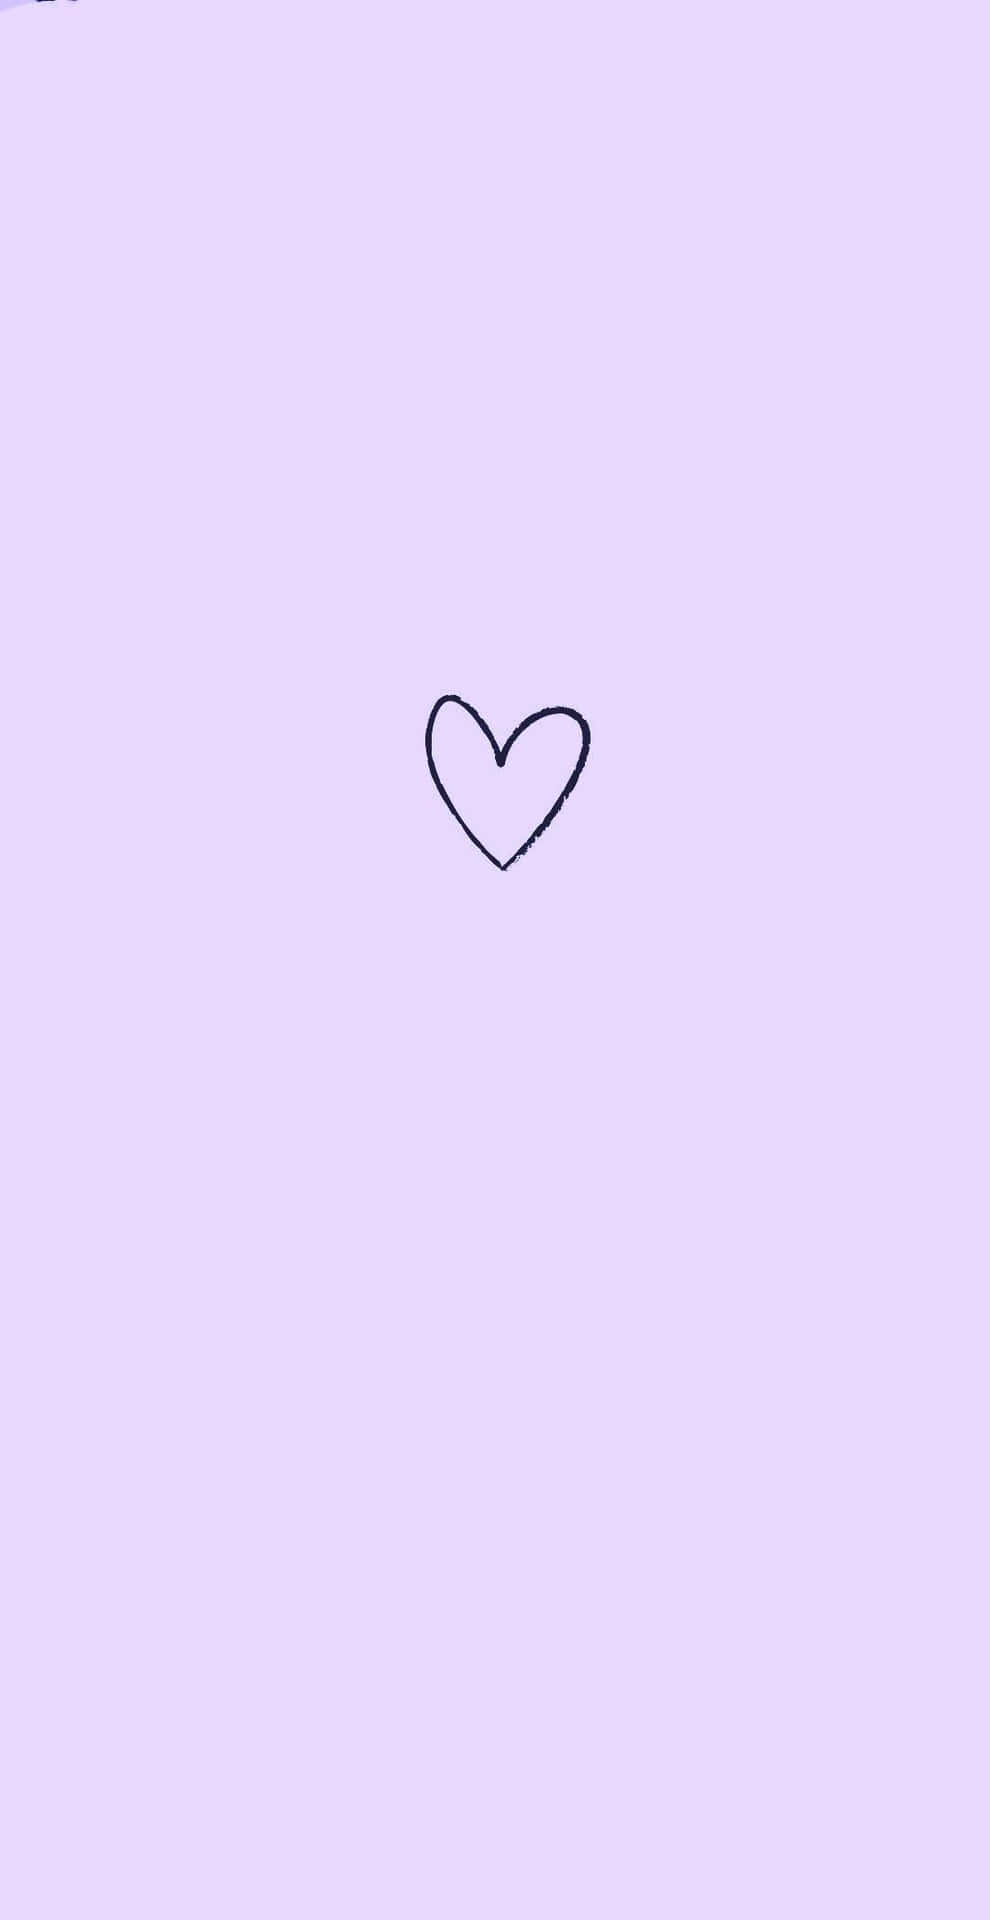 Artegráfico De Un Corazón Simple En Tono Morado Pastel Para Iphone. Fondo de pantalla